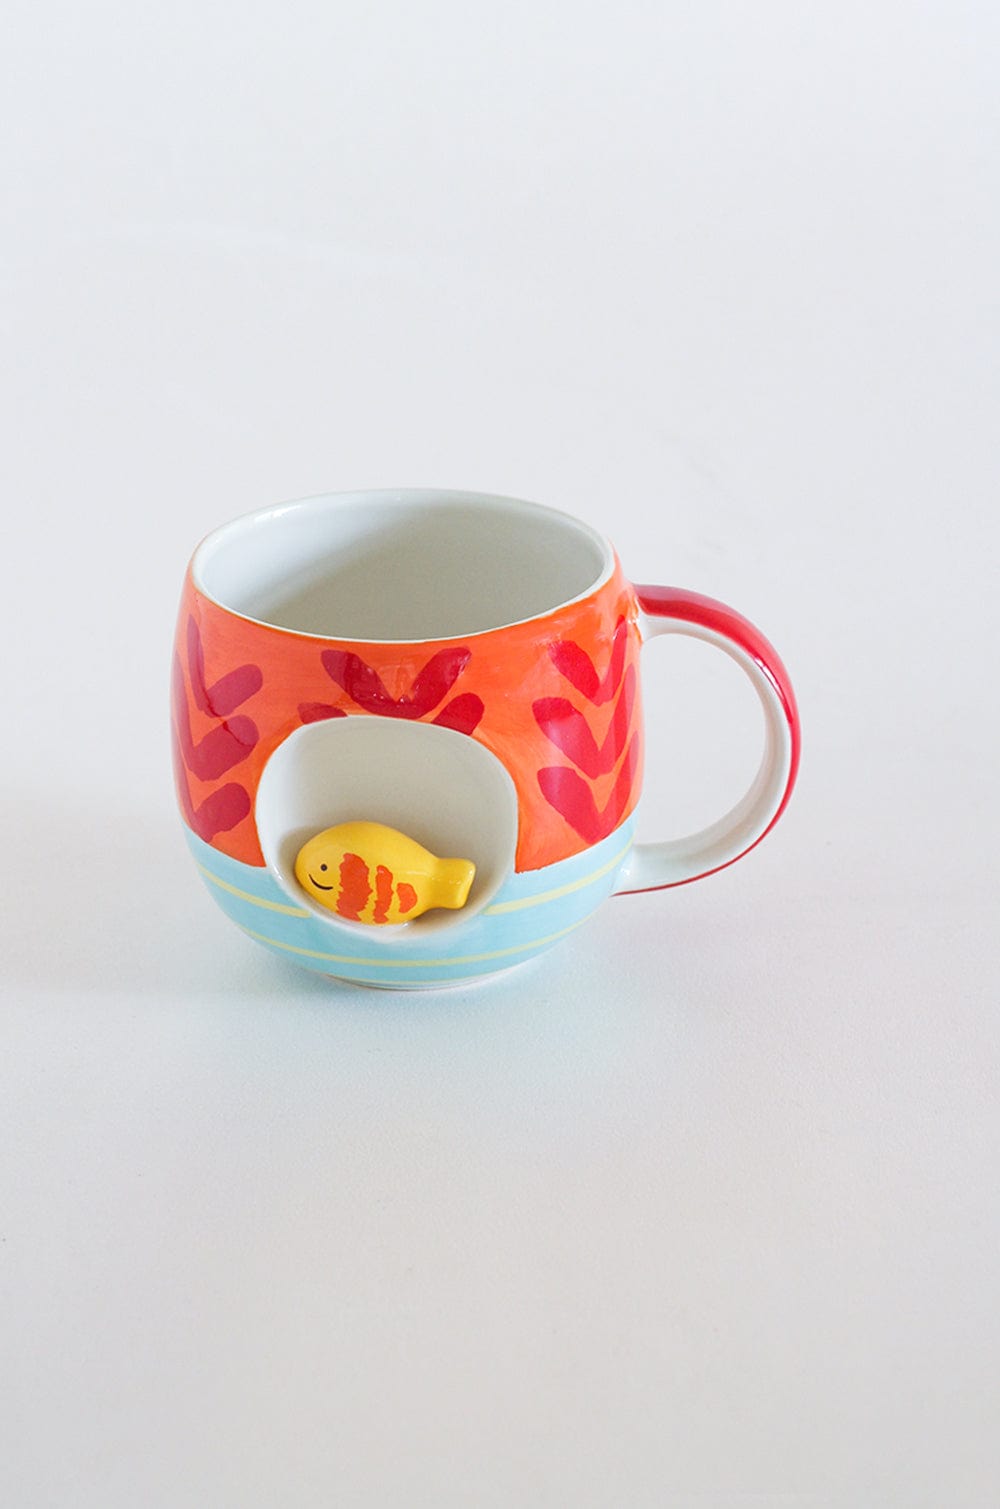 Mugs Red Coral Handpainted Ceramic Mug